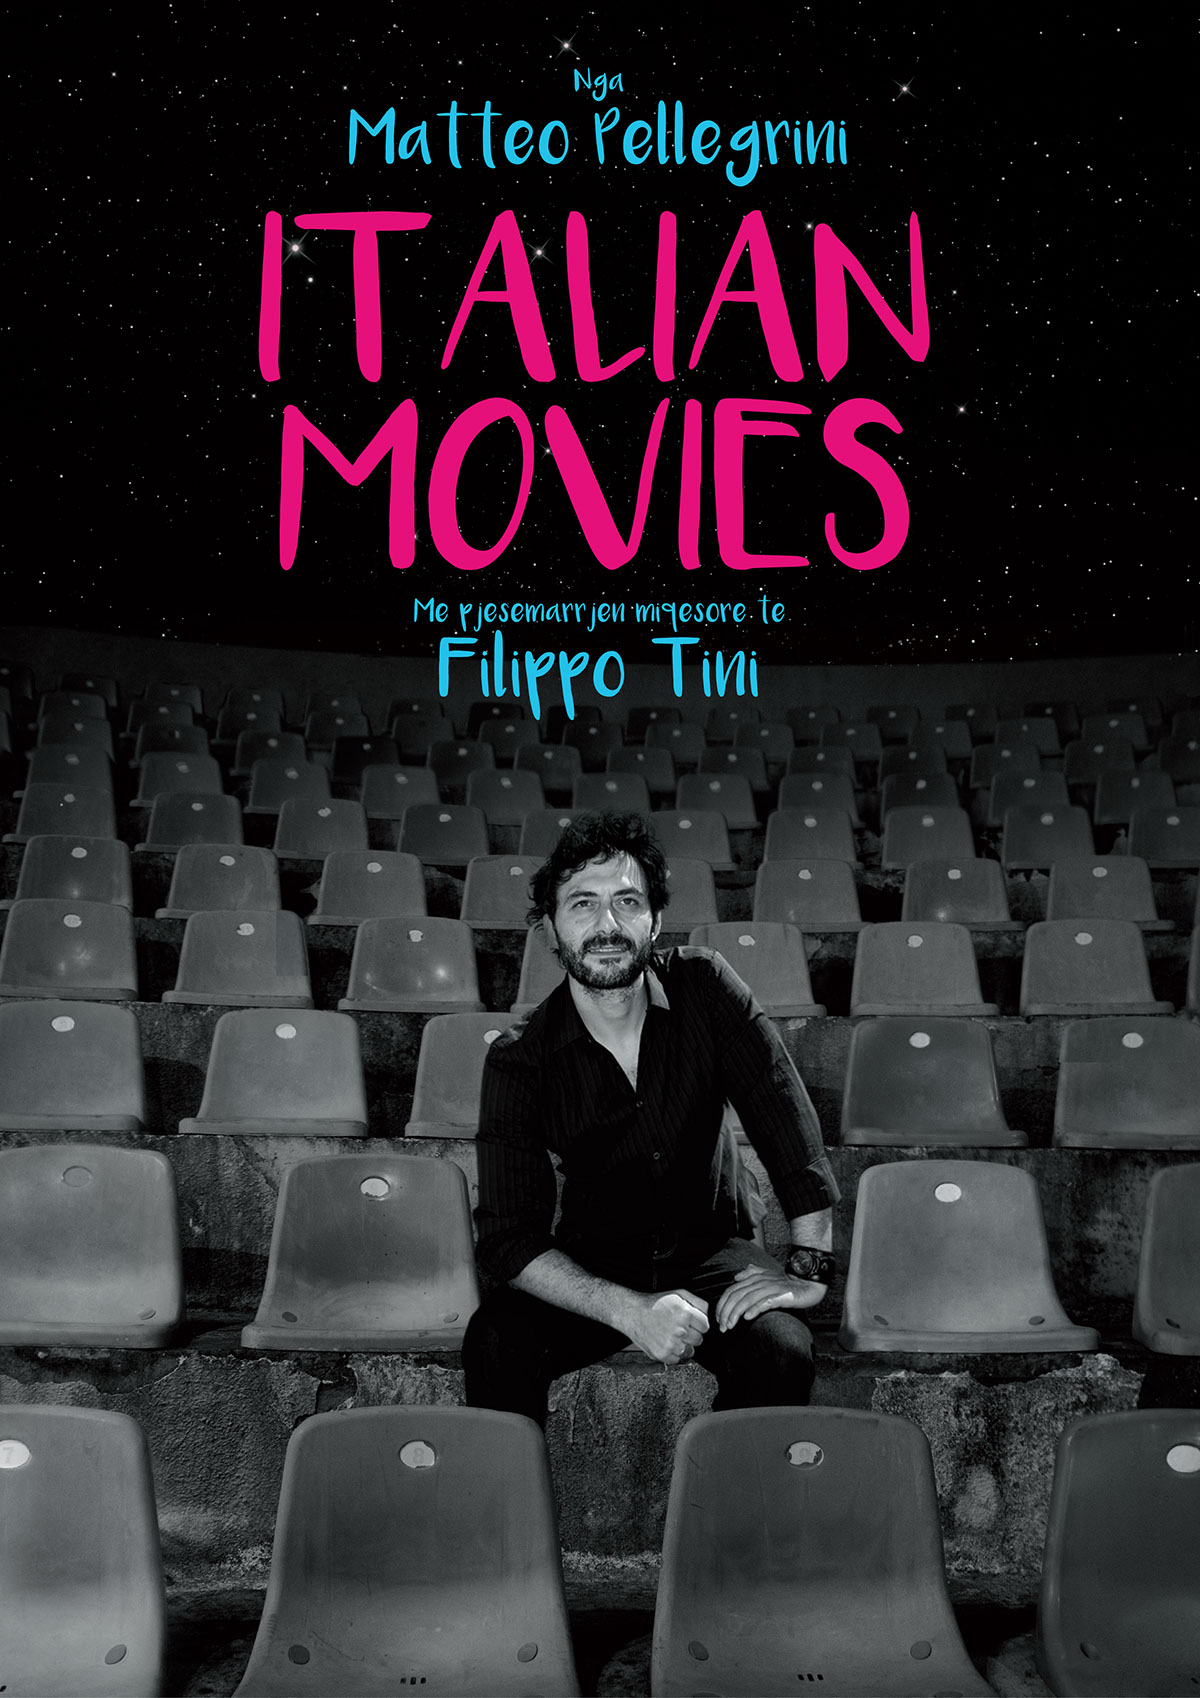 Cinema Italy Albania pasolini fellini Loren movie raul bova Tirana cinecità